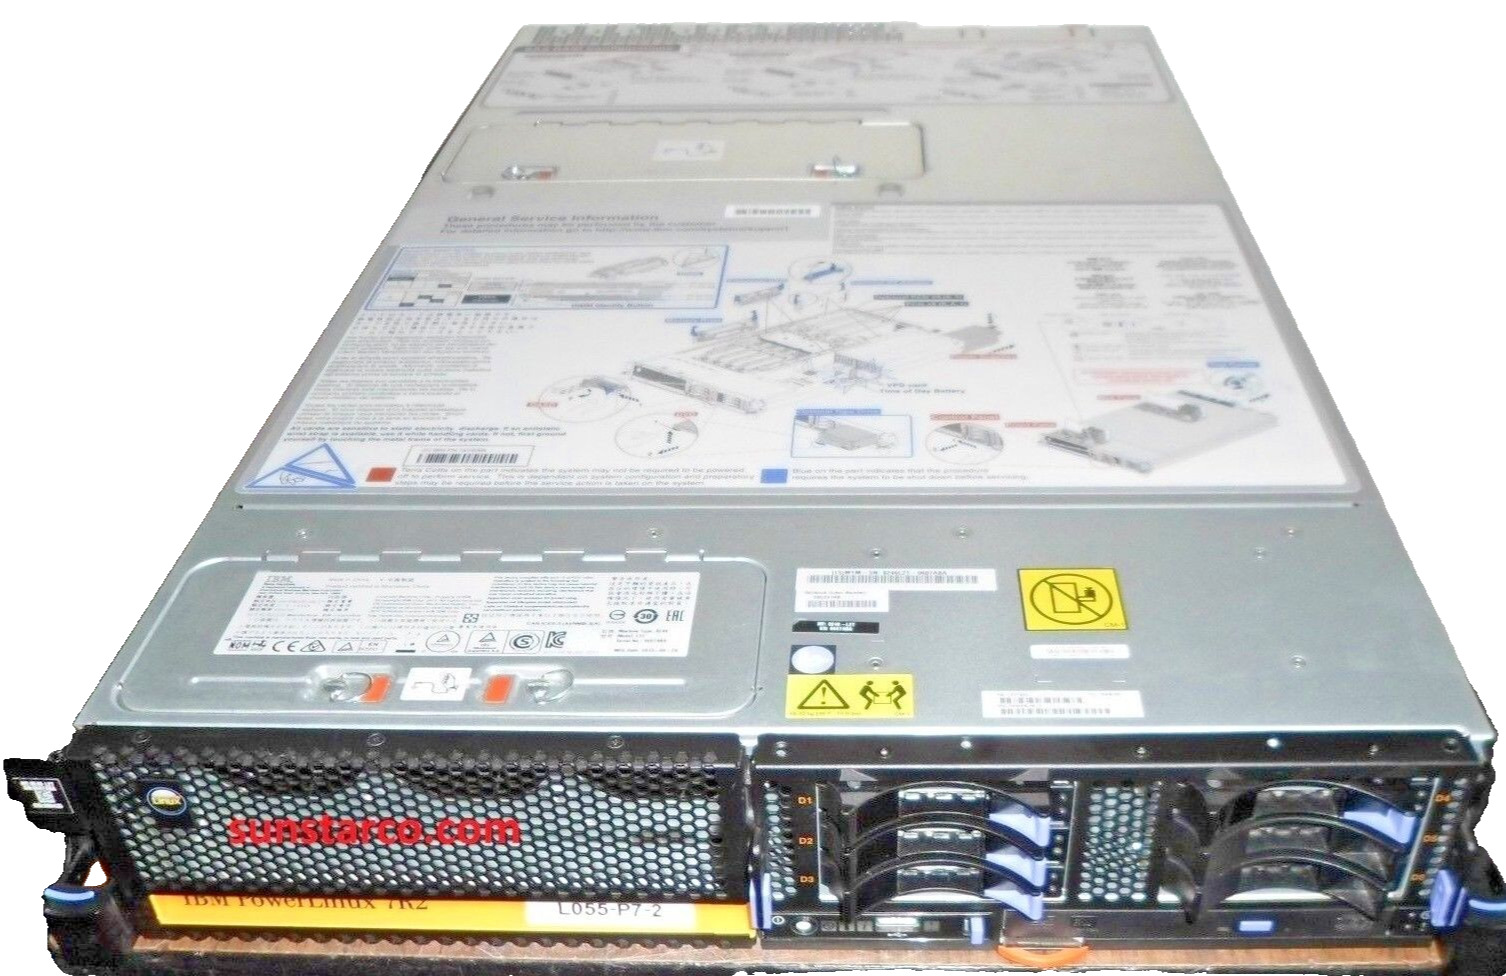 IBM 8246-L2T Power Linux 7R2 16-Core 4.22GHz 256Gb RAM, 4 x 146GB HDD